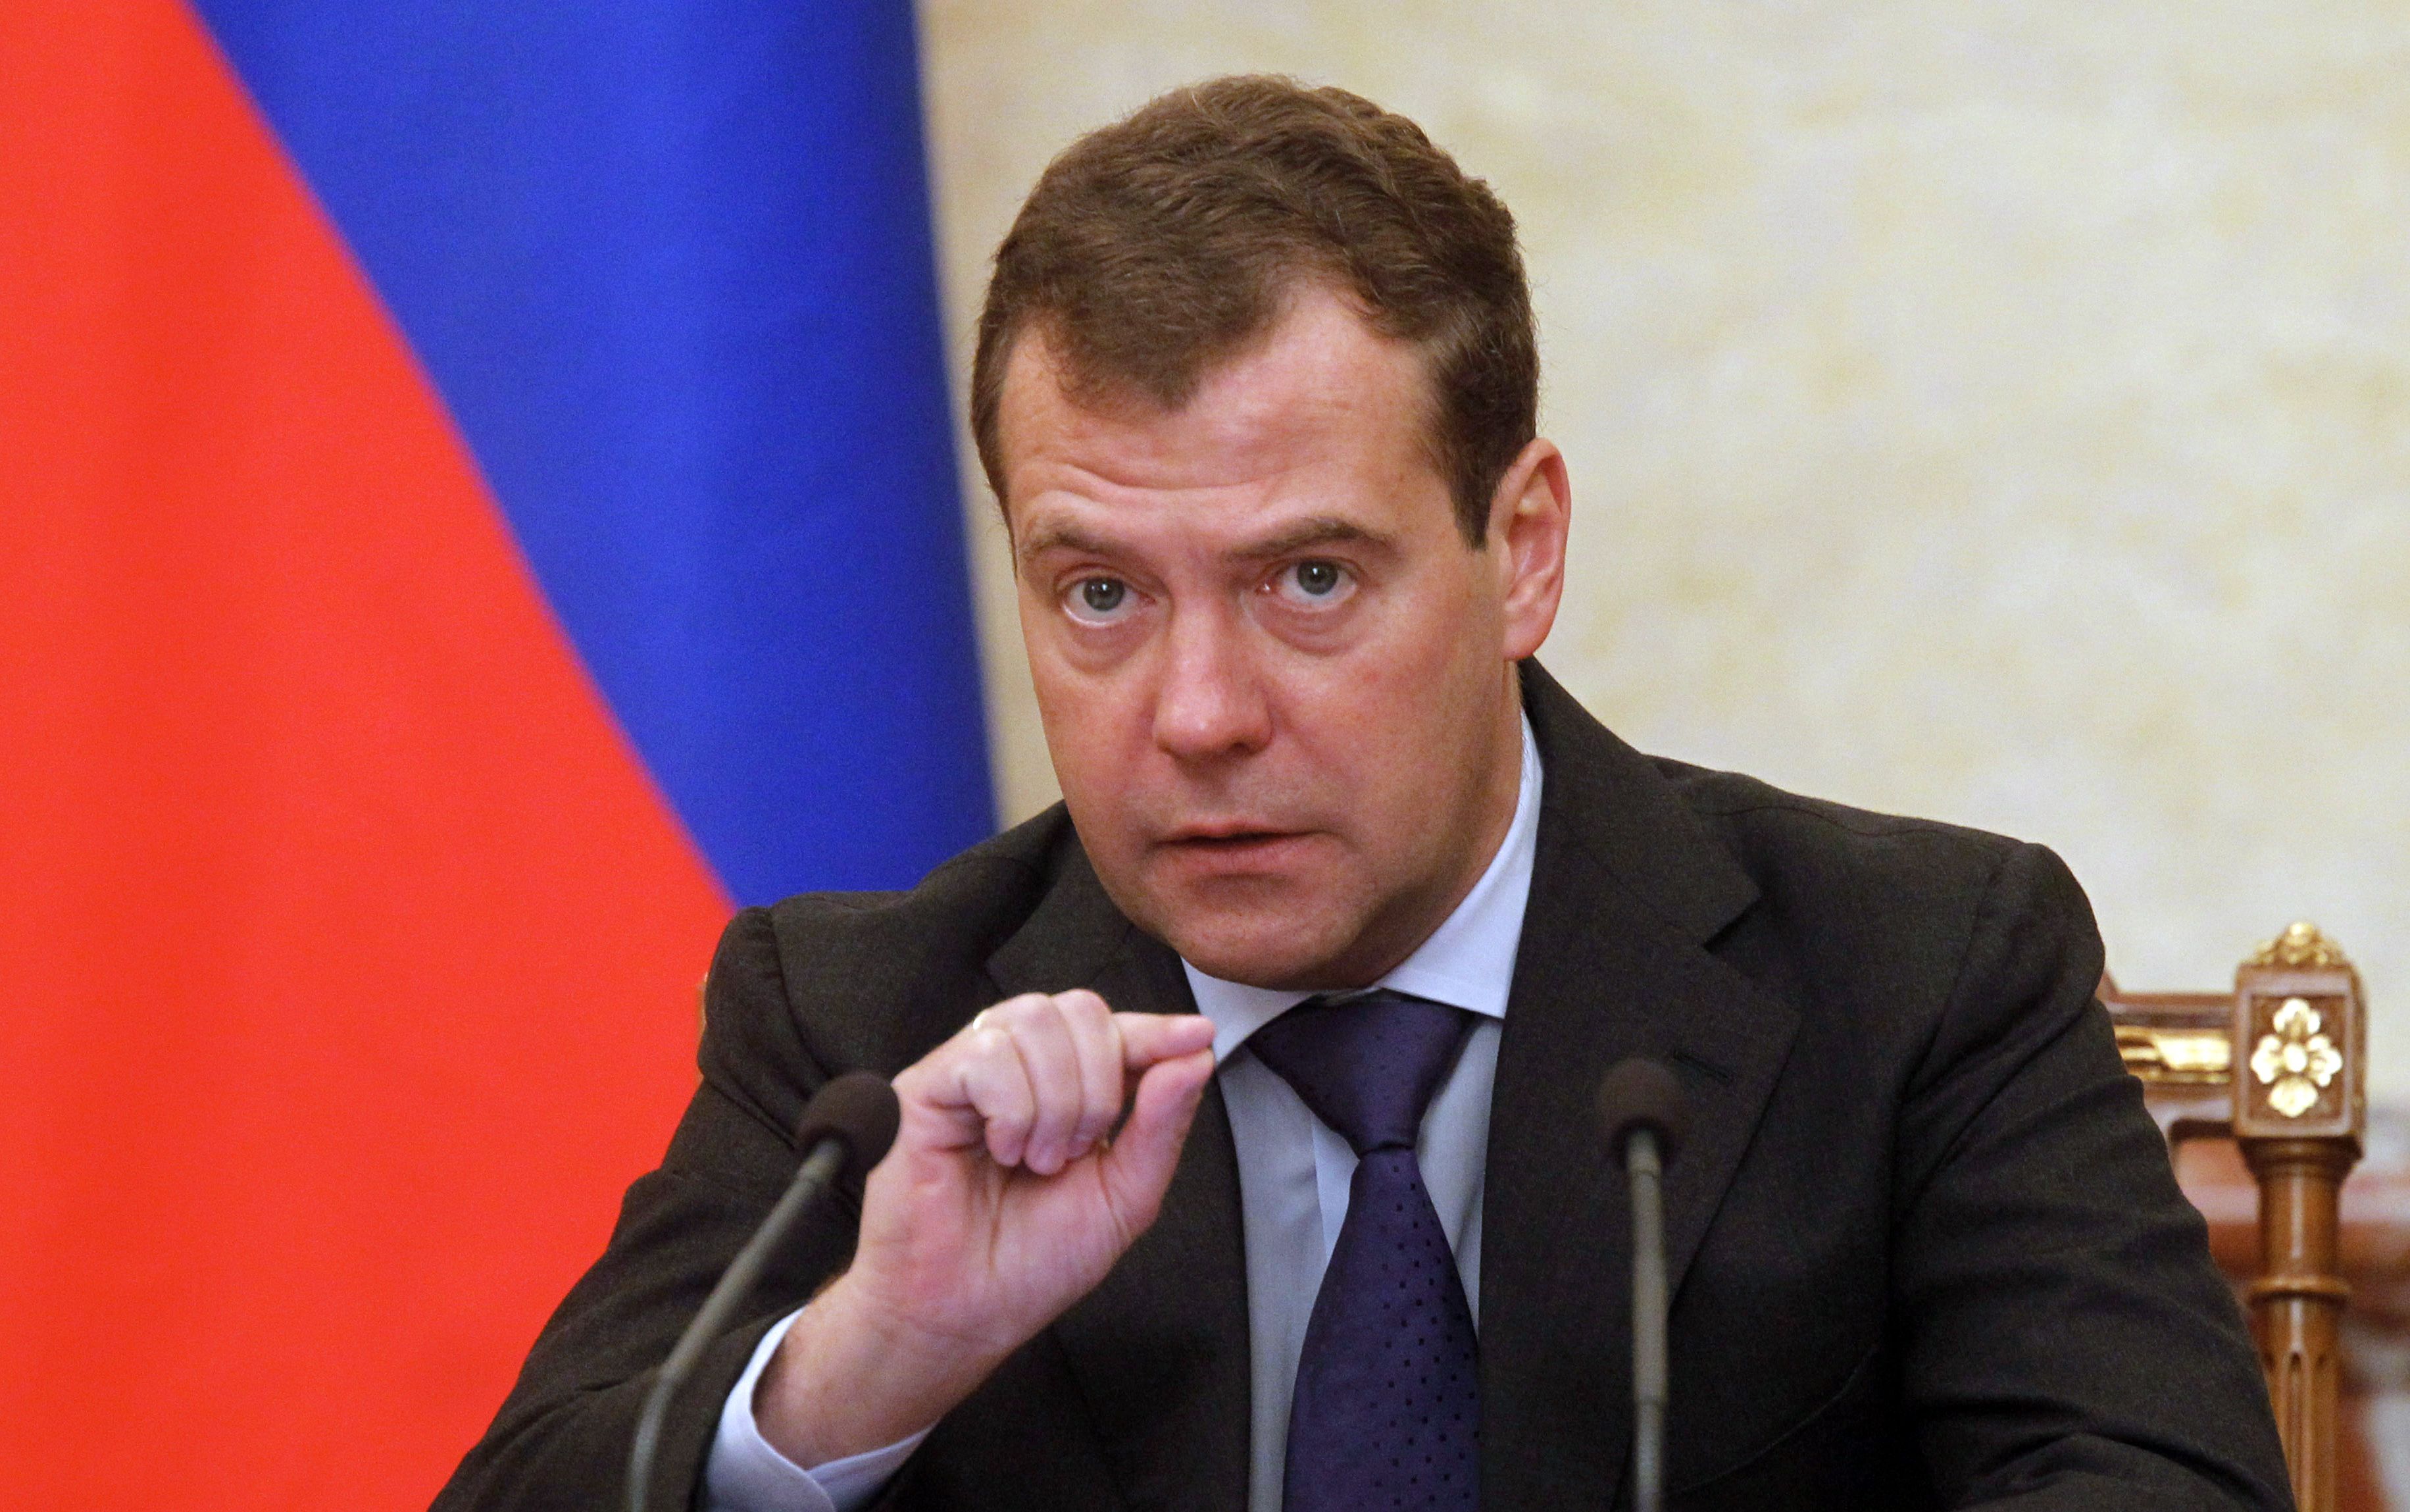 Ông Medvedev: Ba Lan sẽ “biến mất” nếu Nga - NATO xung đột